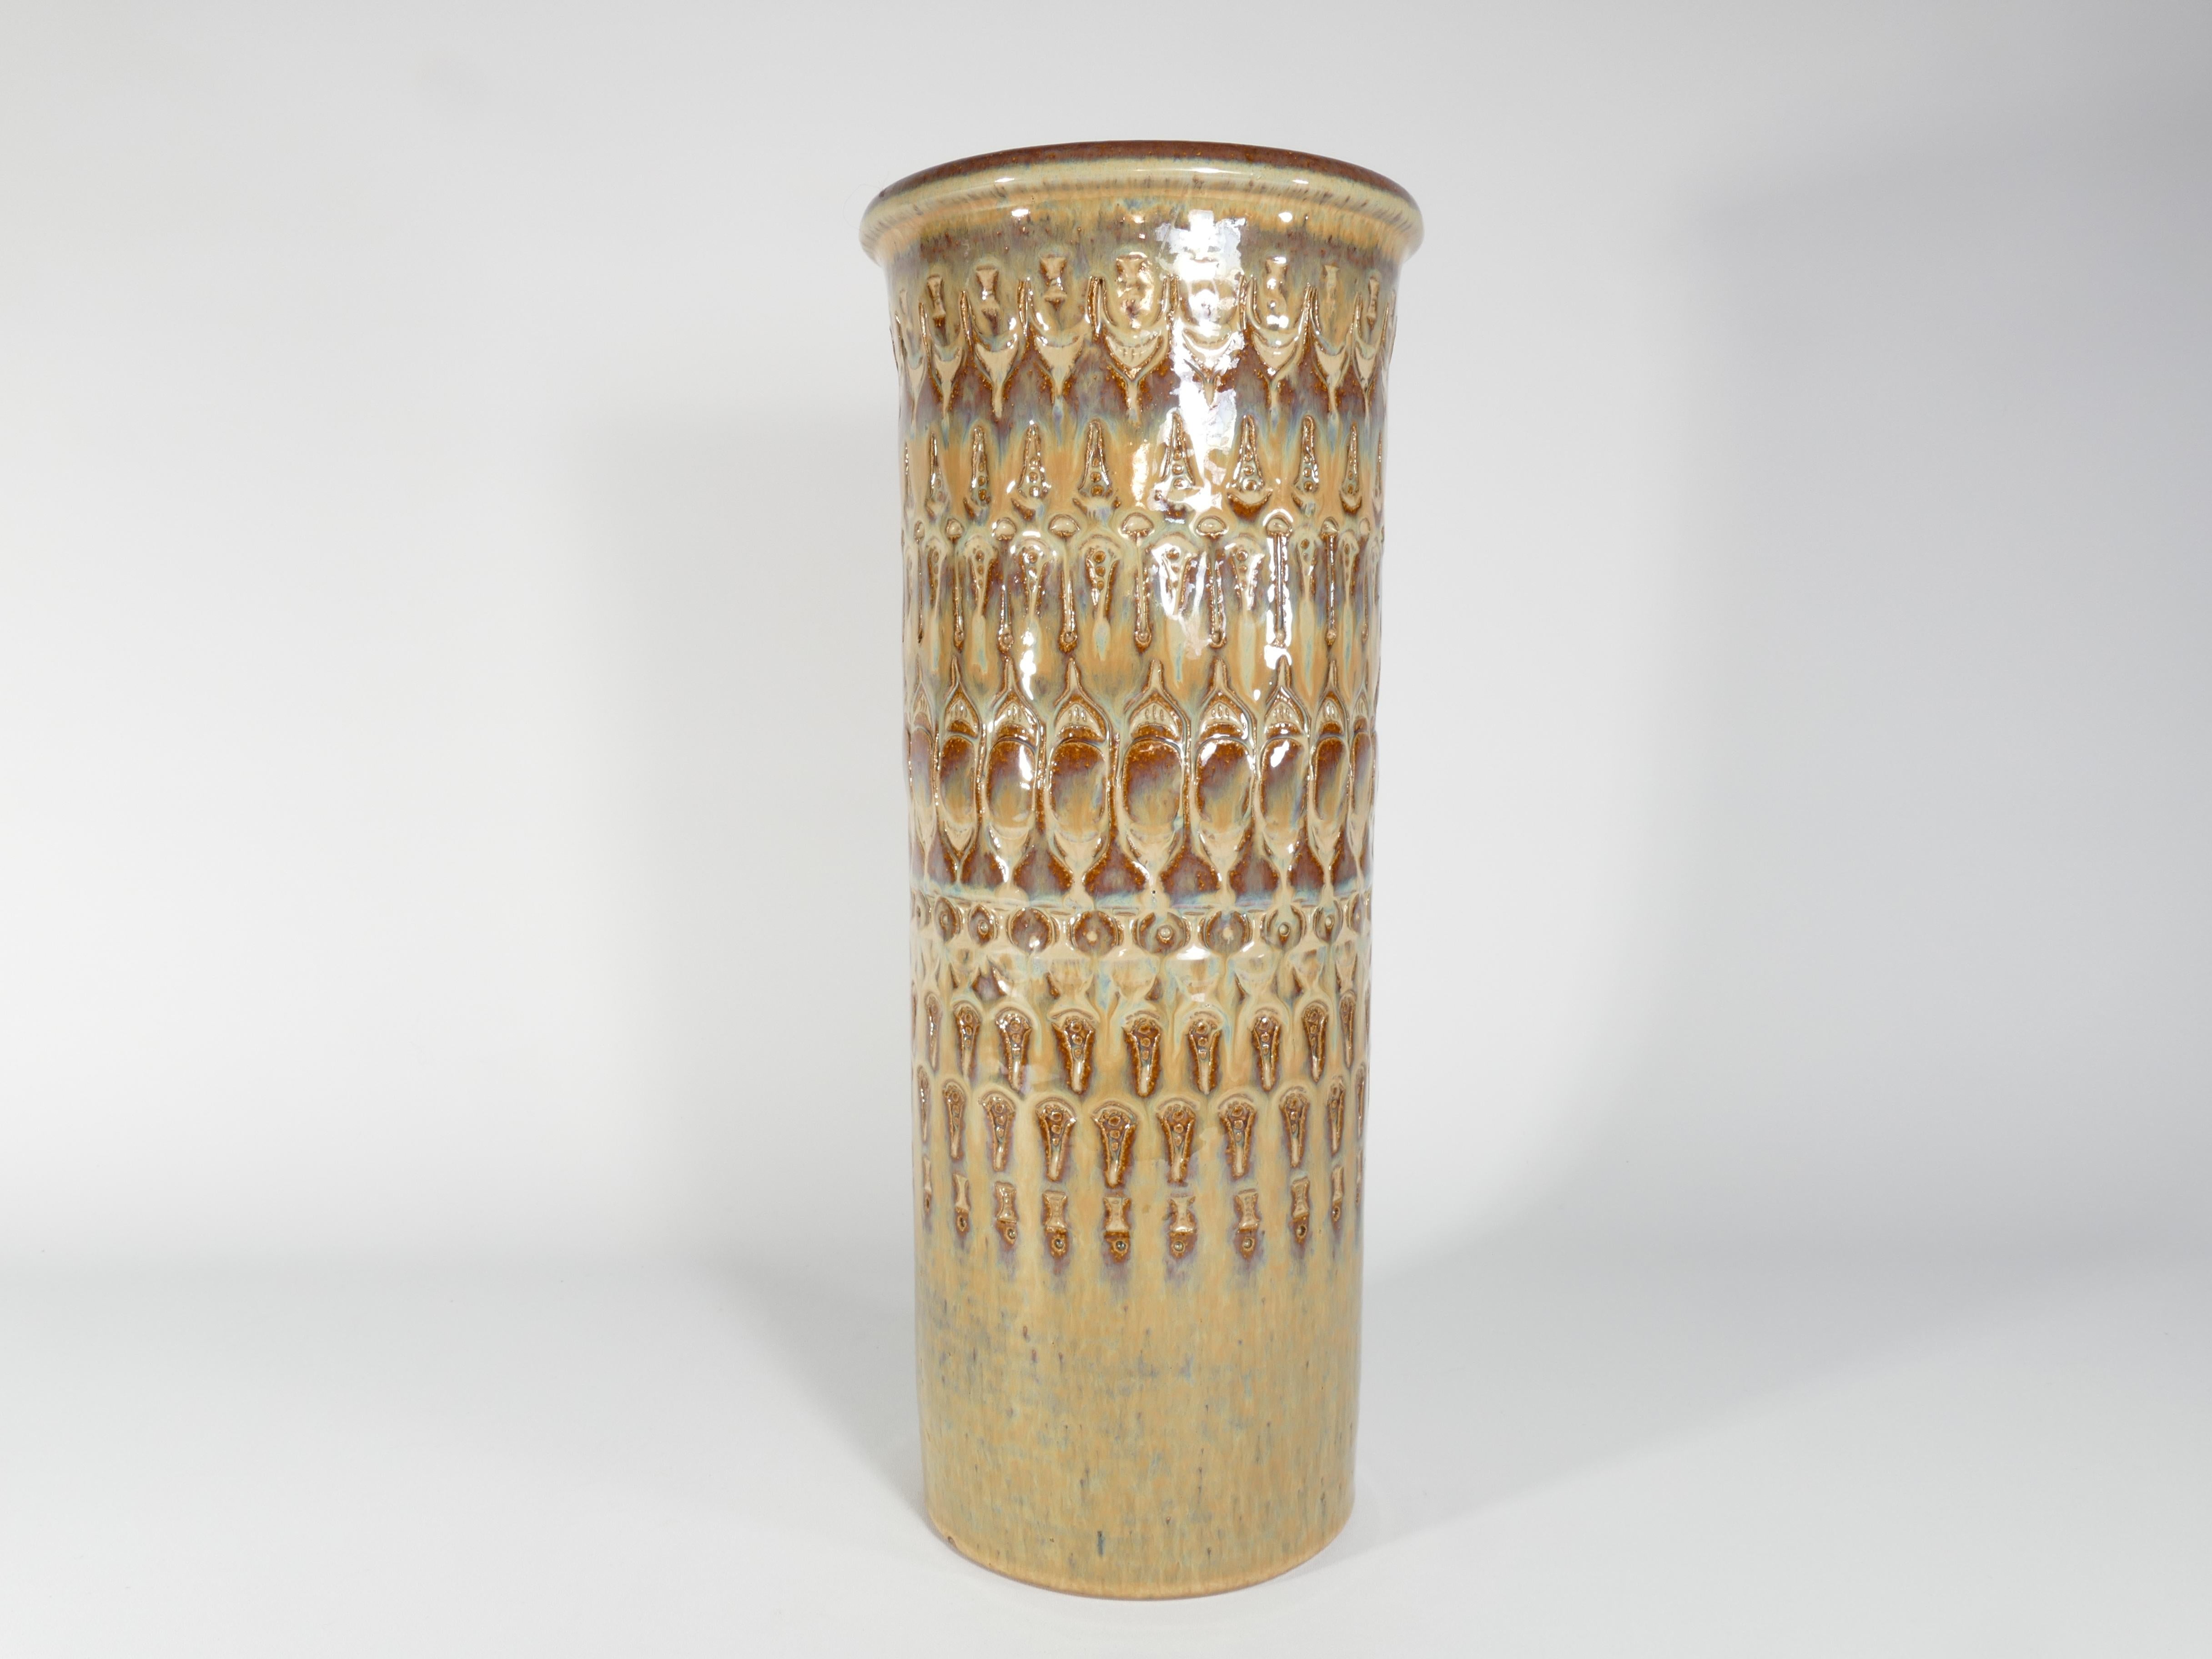 Diese große (40 cm) und exquisite Bodenvase aus Steingut wurde Mitte des 20. Jahrhunderts handgefertigt und trägt die unverkennbare Marke Søholm Stentøj. Diese Vase, die von der renommierten dänischen Firma Soholm Stentoj auf der malerischen Insel